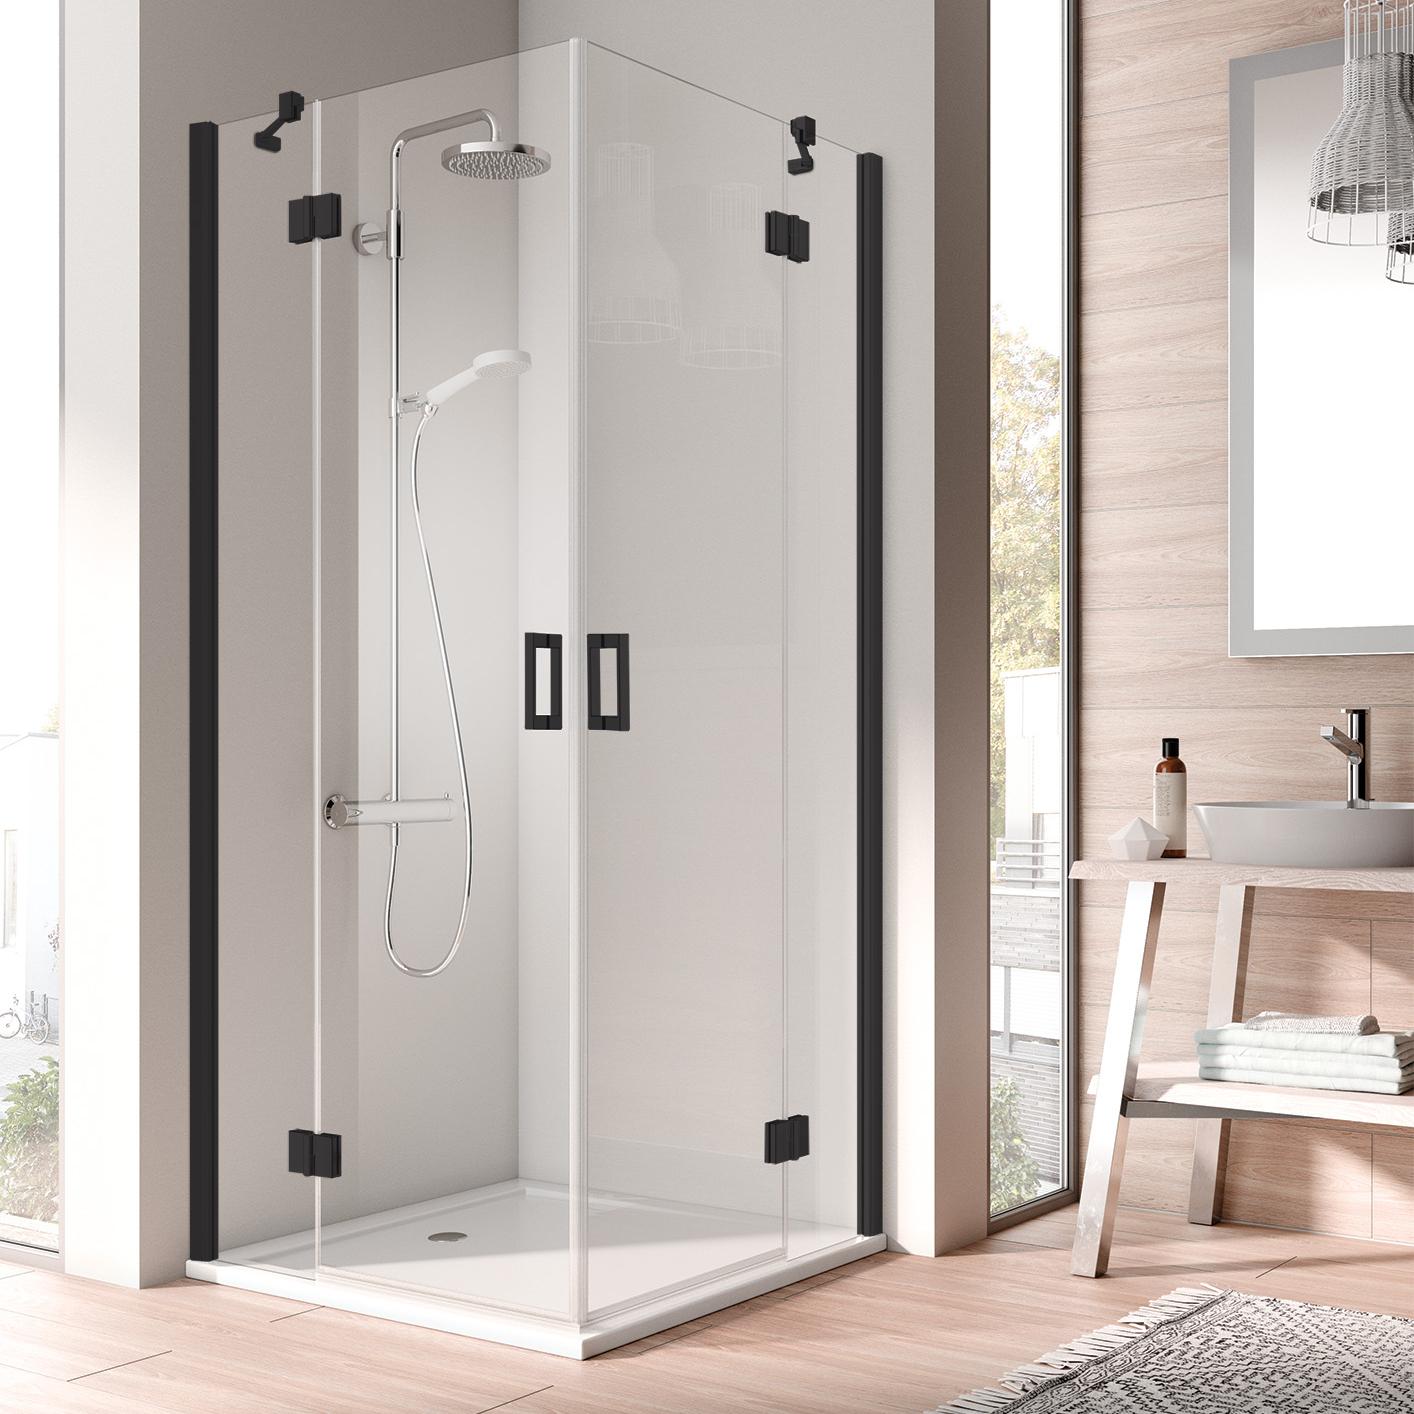 Pantový sprchový kout Kermi OSIA Rohový vstup 2-dílný (kyvné dveře s pevnými poli) – poloviční díl, černá